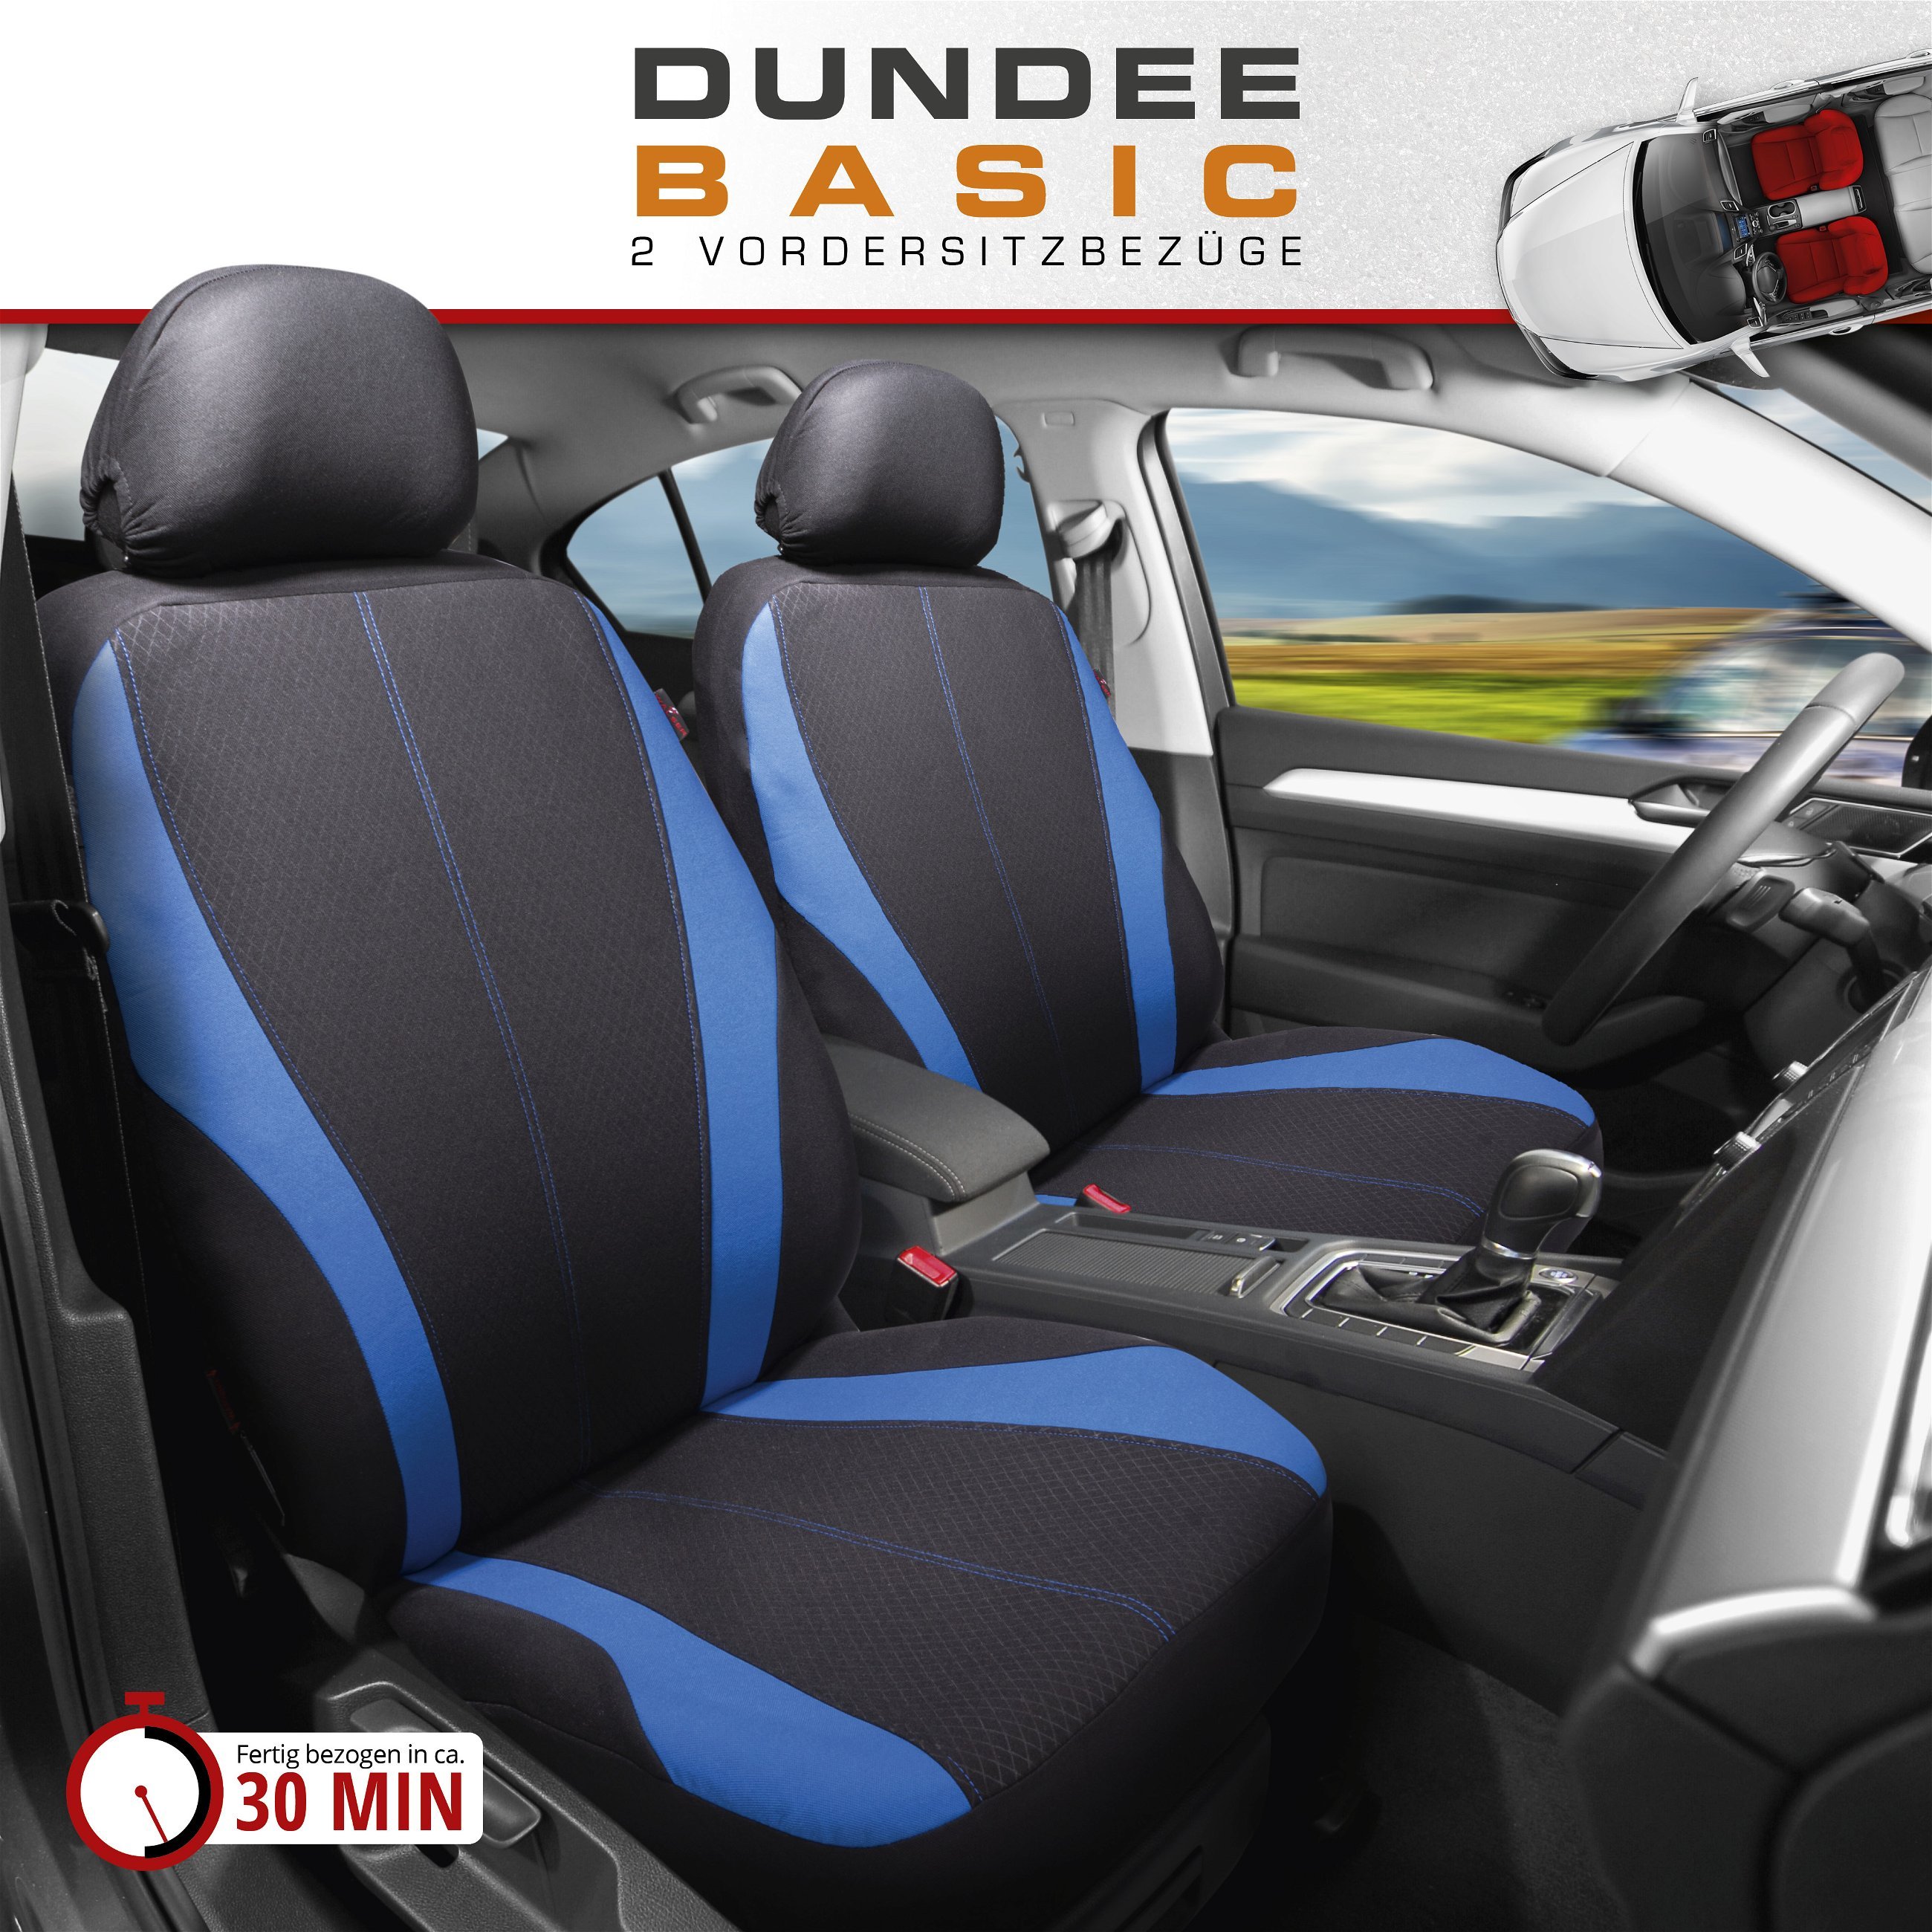 Autositzbezug ZIPP-IT Dundee, PKW-Schonbezüge für 2 Vordersitze mit Reißverschluss-System schwarz/blau